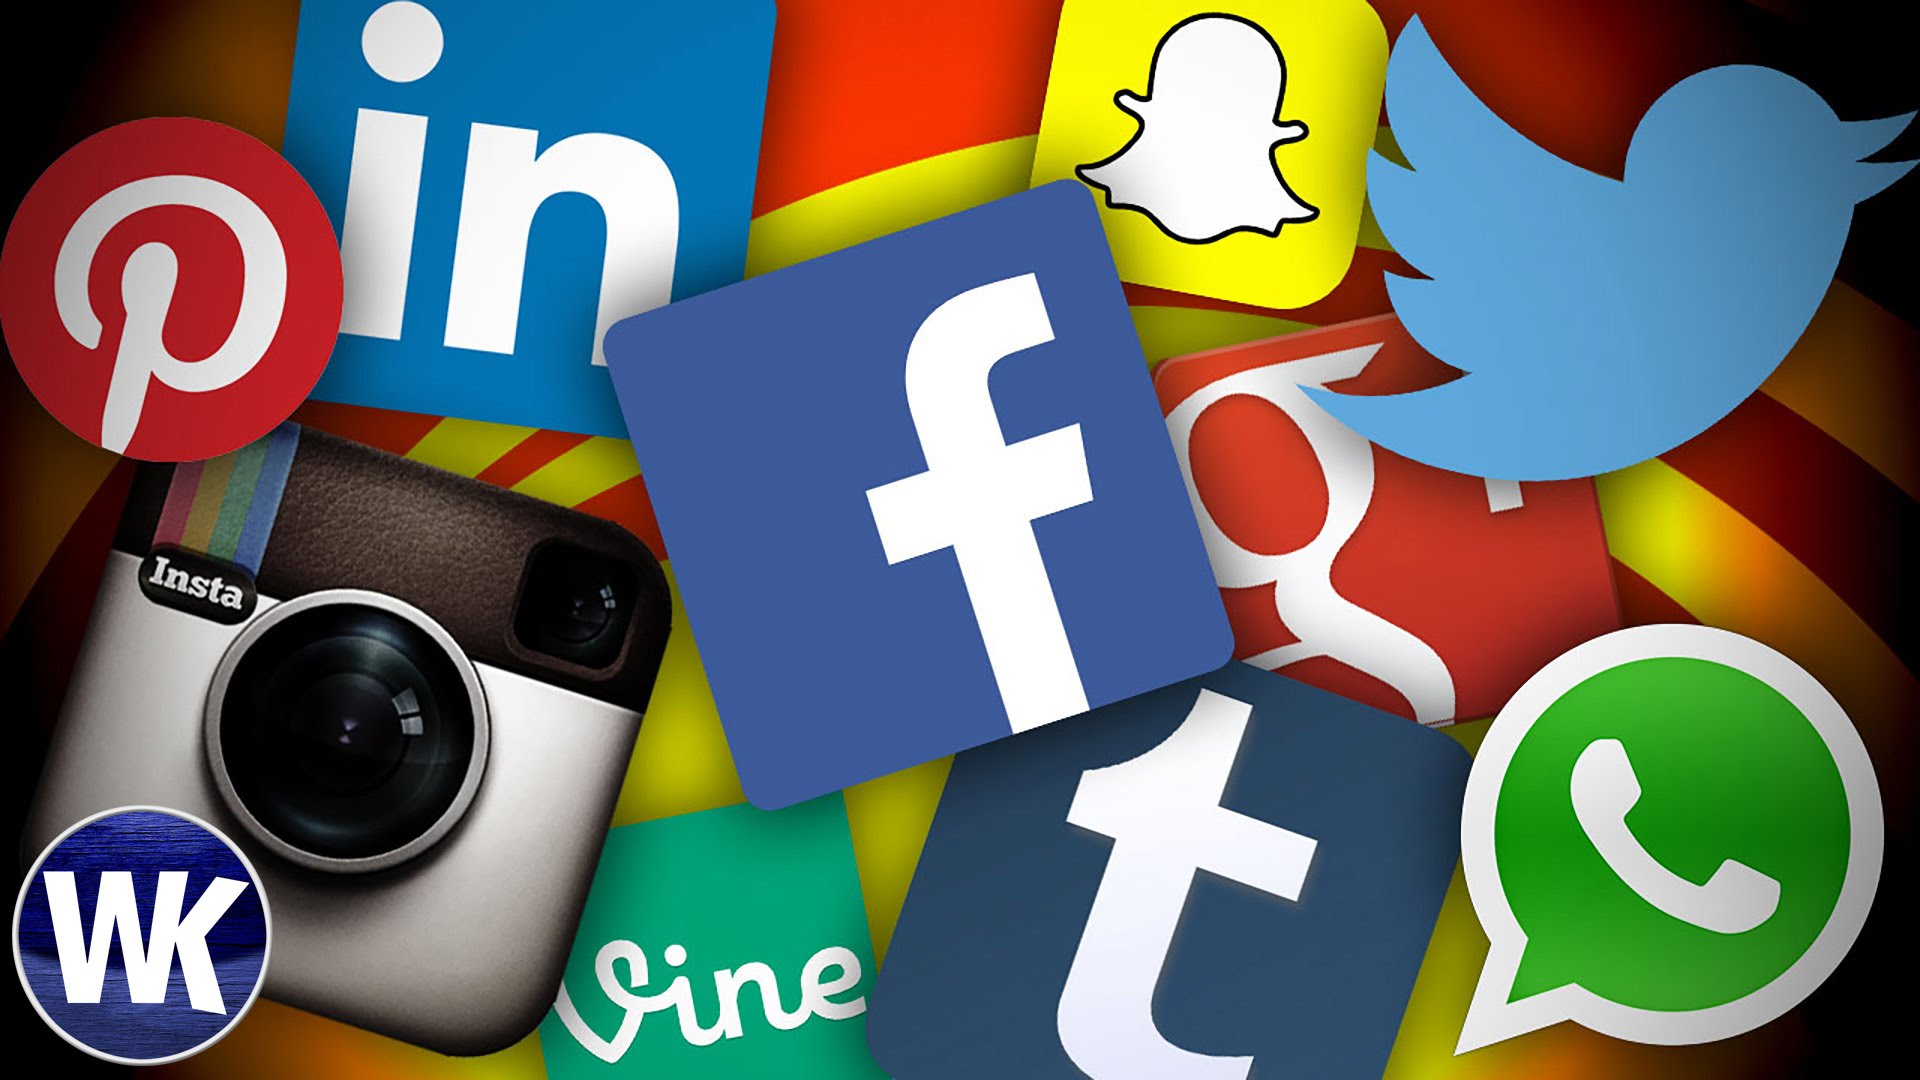 Mãglichkeiten wie schãler social media zu ihrem vorteil nutzen kãnnensocial media lernen